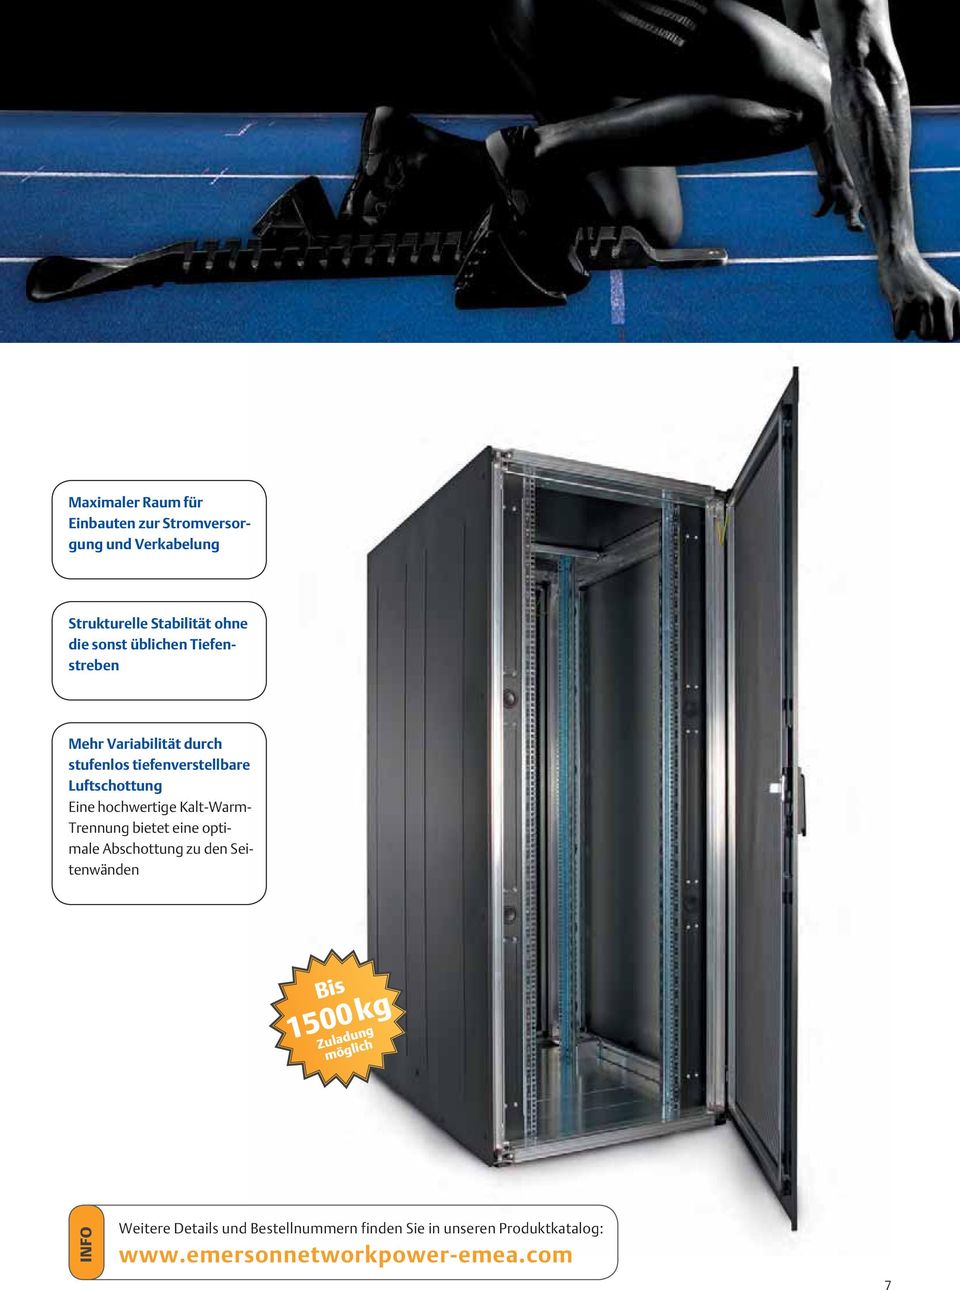 Kalt-Warm- Trennung bietet eine optimale Abschottung zu den Seitenwänden Bis 1500 kg Zuladung möglich INFO